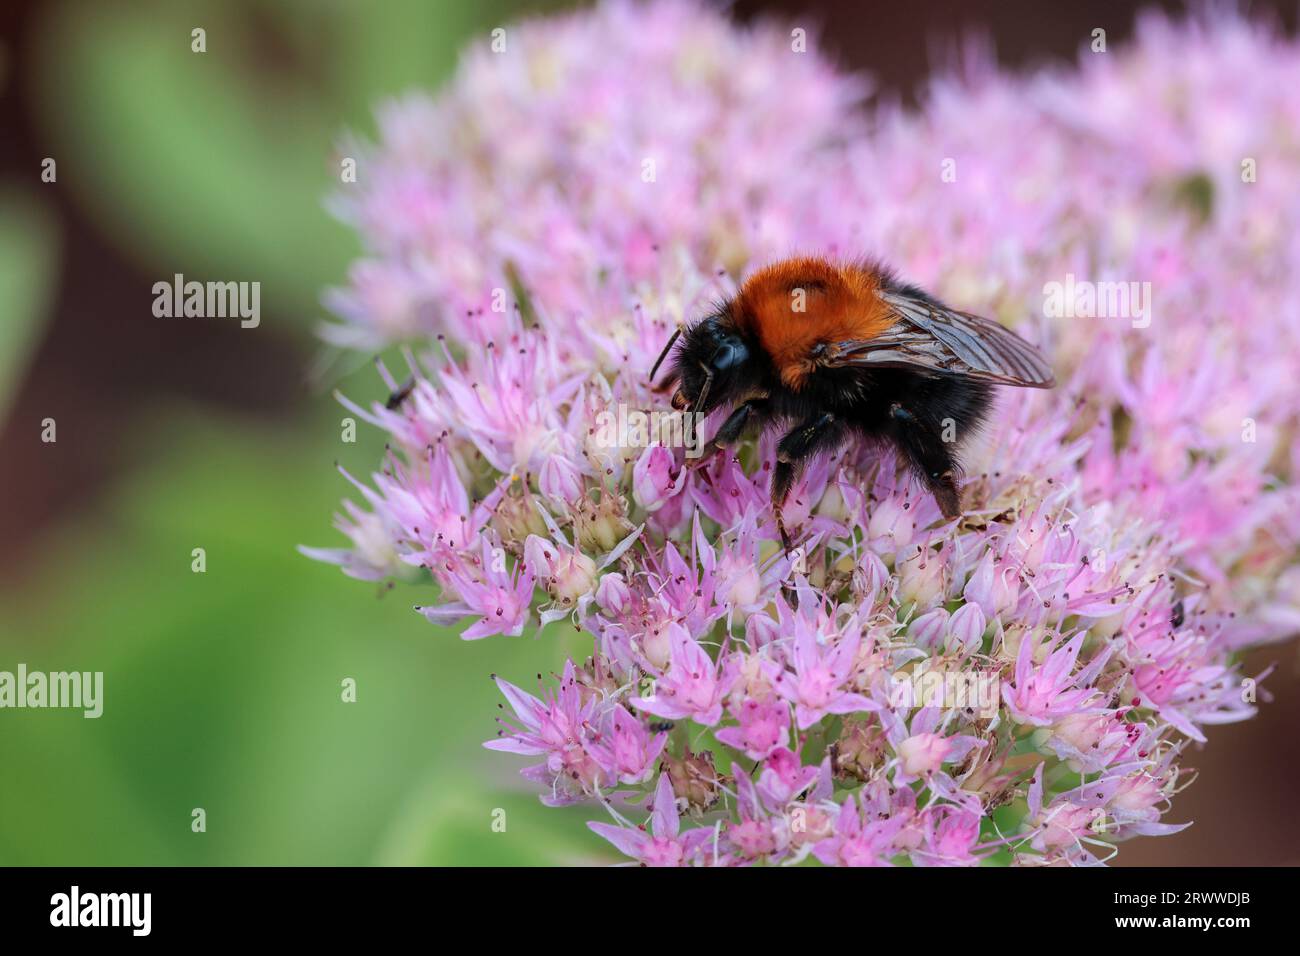 Bumble abeille noire avec des poils de gingembre sur le thorax se nourrissant sur la tête de fleur multifleurie de couleur lilas. Fond vert et noir doux sur l'espace de copie gauche Banque D'Images